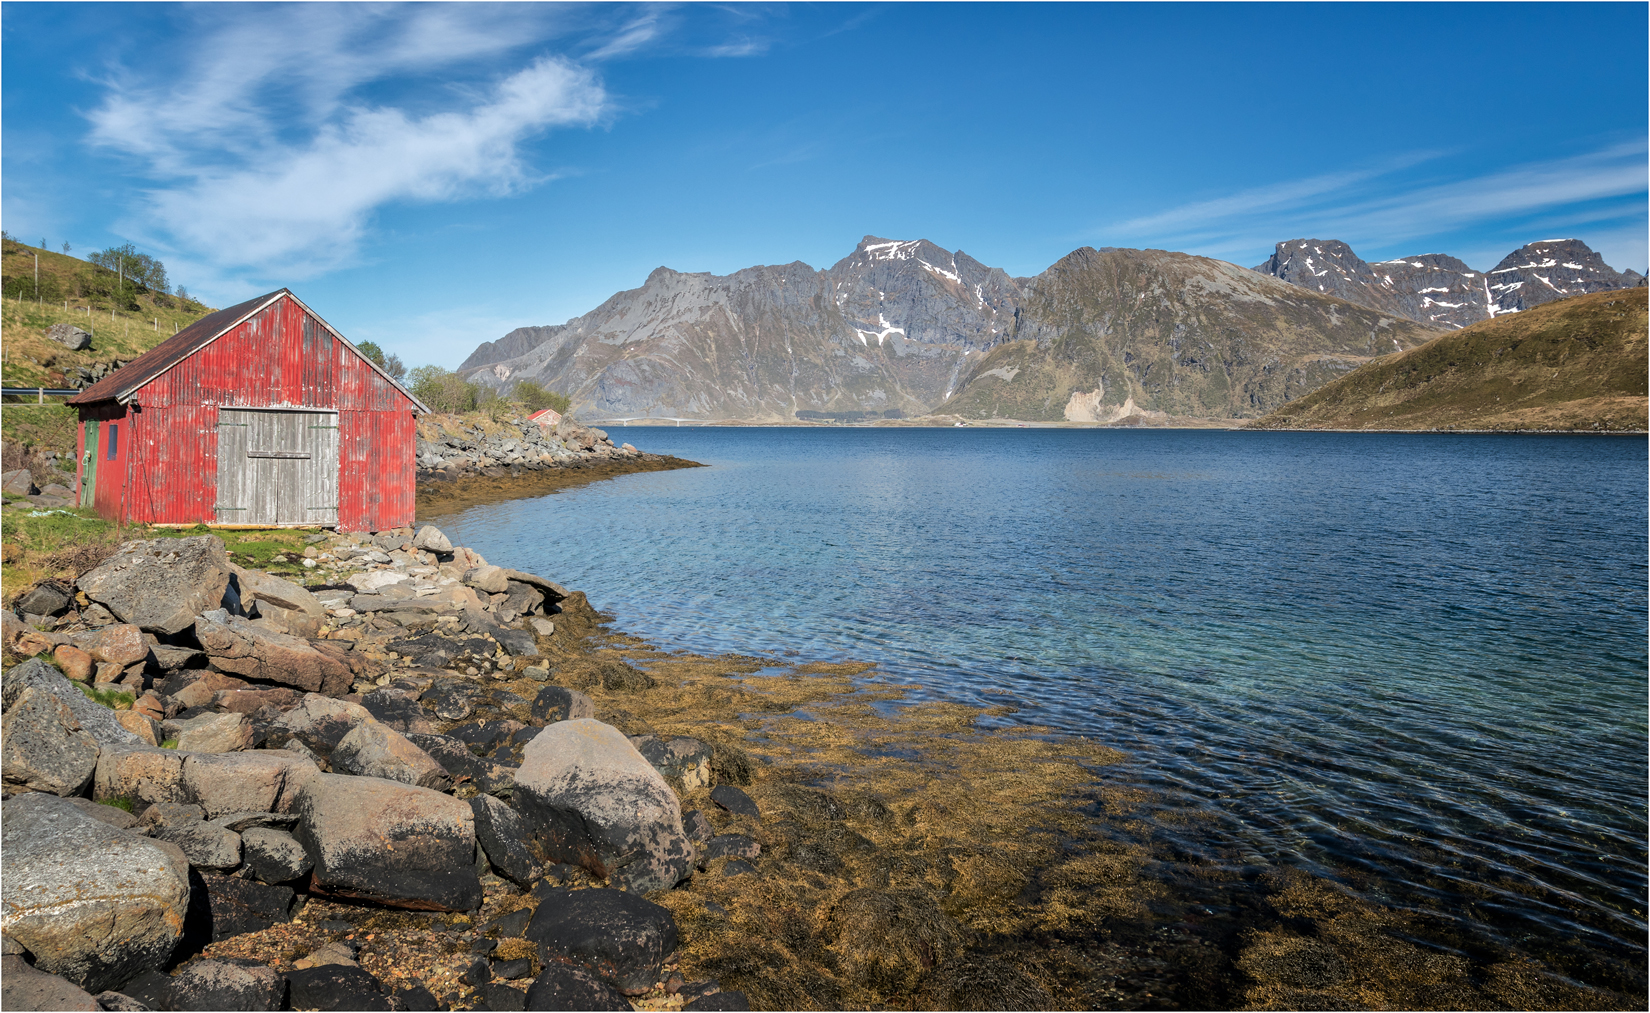 The Sellfjorden